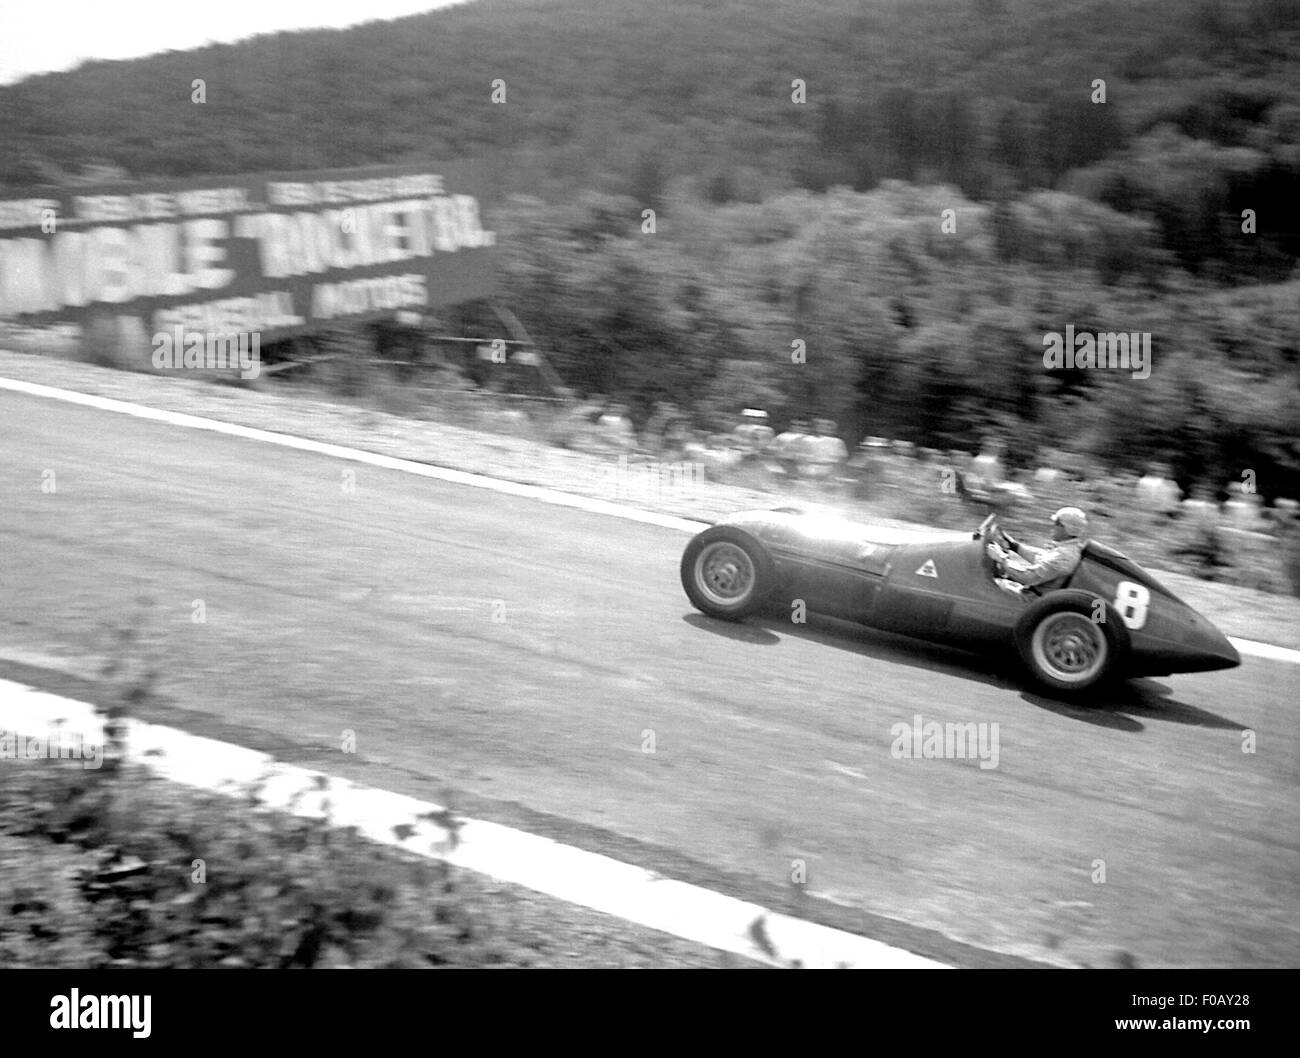 ALFA ROMEO 158 FARINA AFTER EAU ROUGE, Belgian GP Spa 1950 Stock Photo